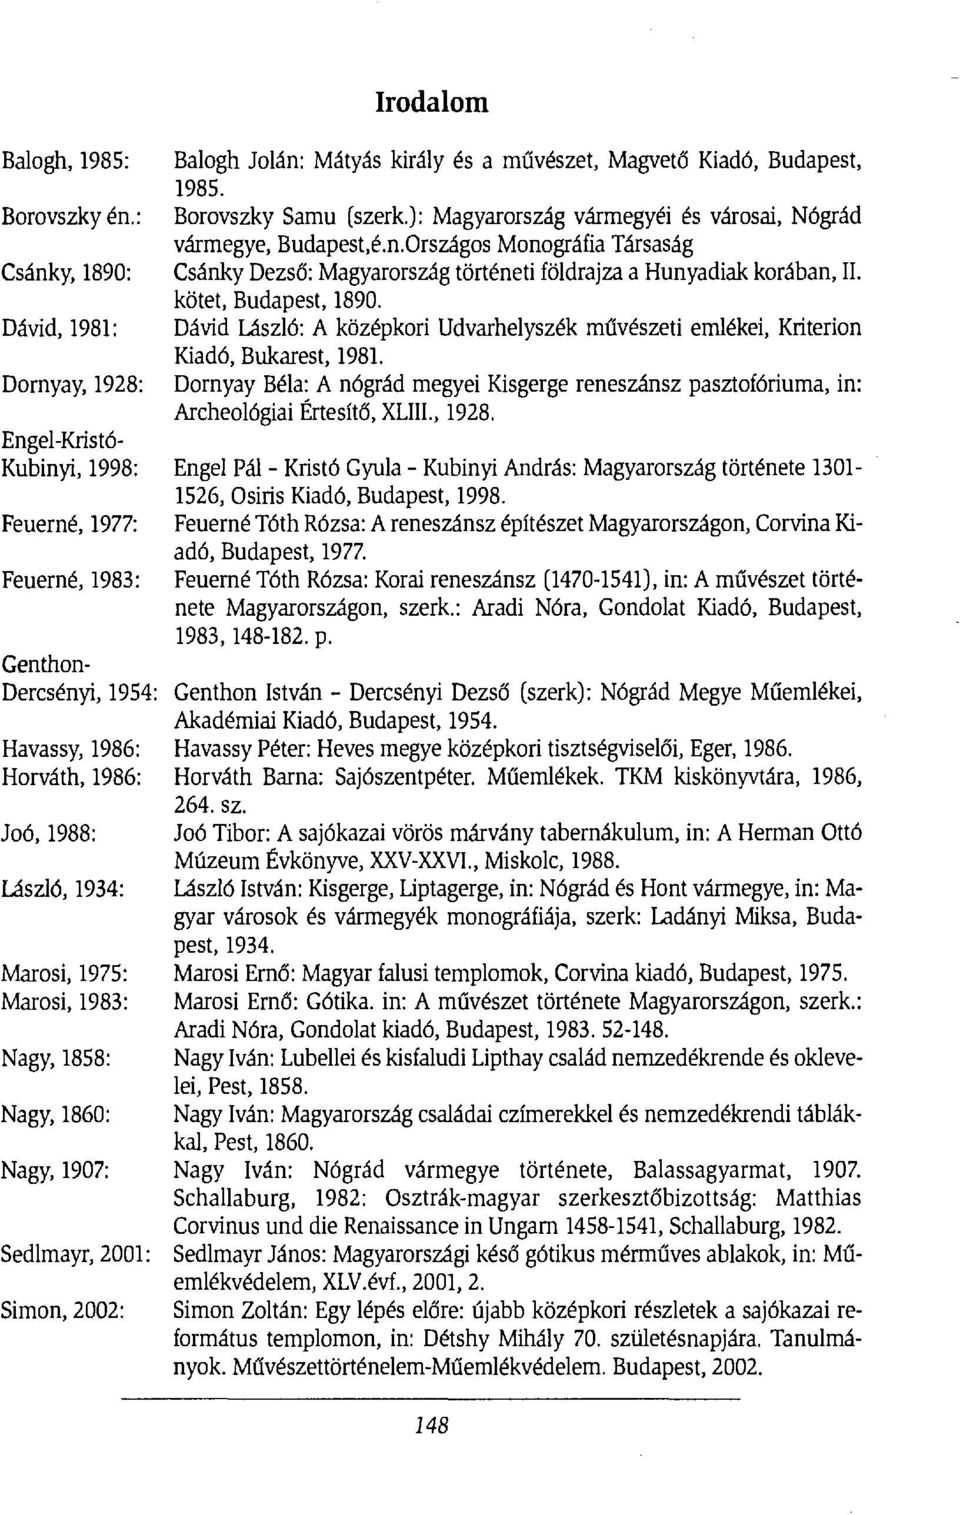 Dornyay, 1928: Dornyay Béla: A nógrád megyei Kisgerge reneszánsz pasztofóriuma, in: Archeológiai Értesítő, XLIII., 1928. Engel-Kristó- Kubinyi, 1998: Engel Pál - Kristó Gyula - Kubinyi András: Magyarország története 1301-1526, Osiris Kiadó, Budapest, 1998.